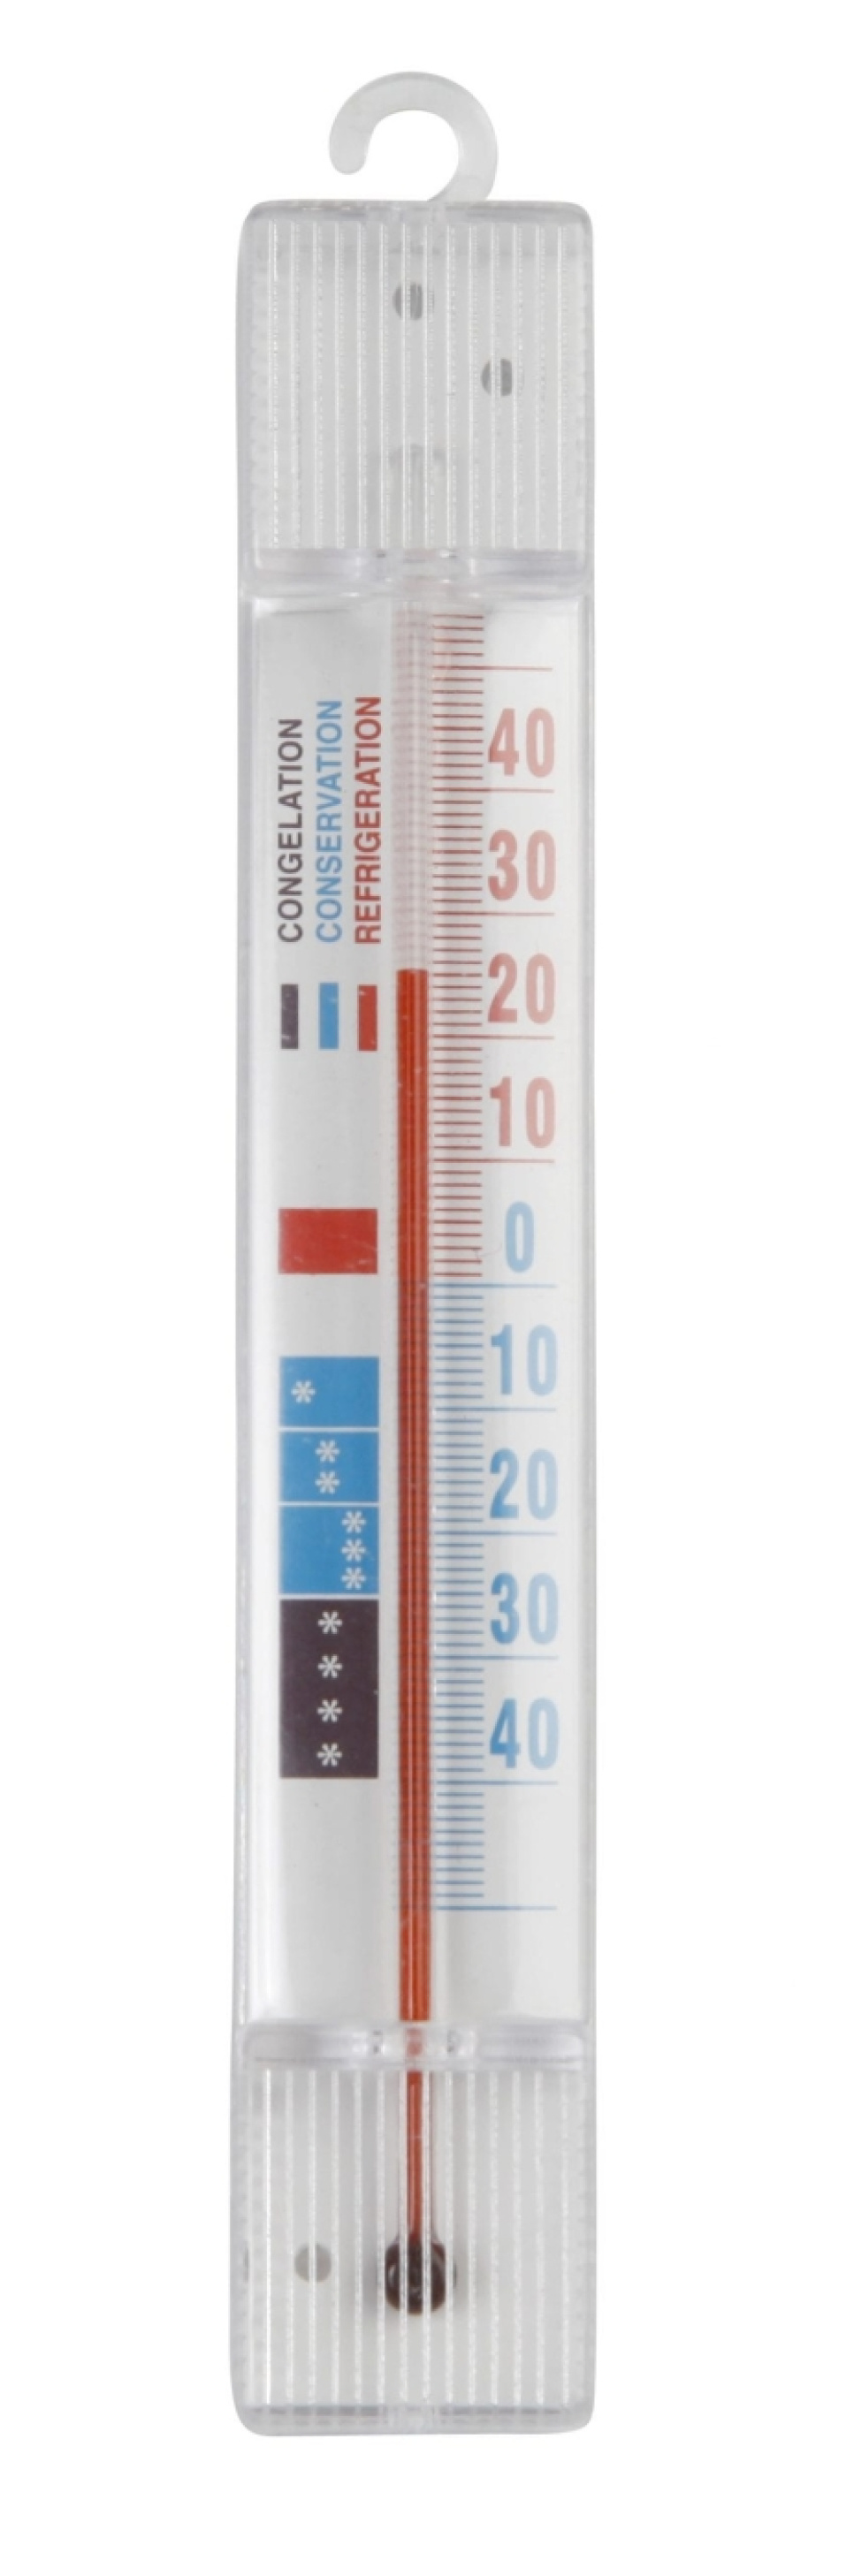 Frystermometer i gruppen Madlavning / Termometer og Målere / Køkken termometre / Simple termometre hos The Kitchen Lab (1071-10156)